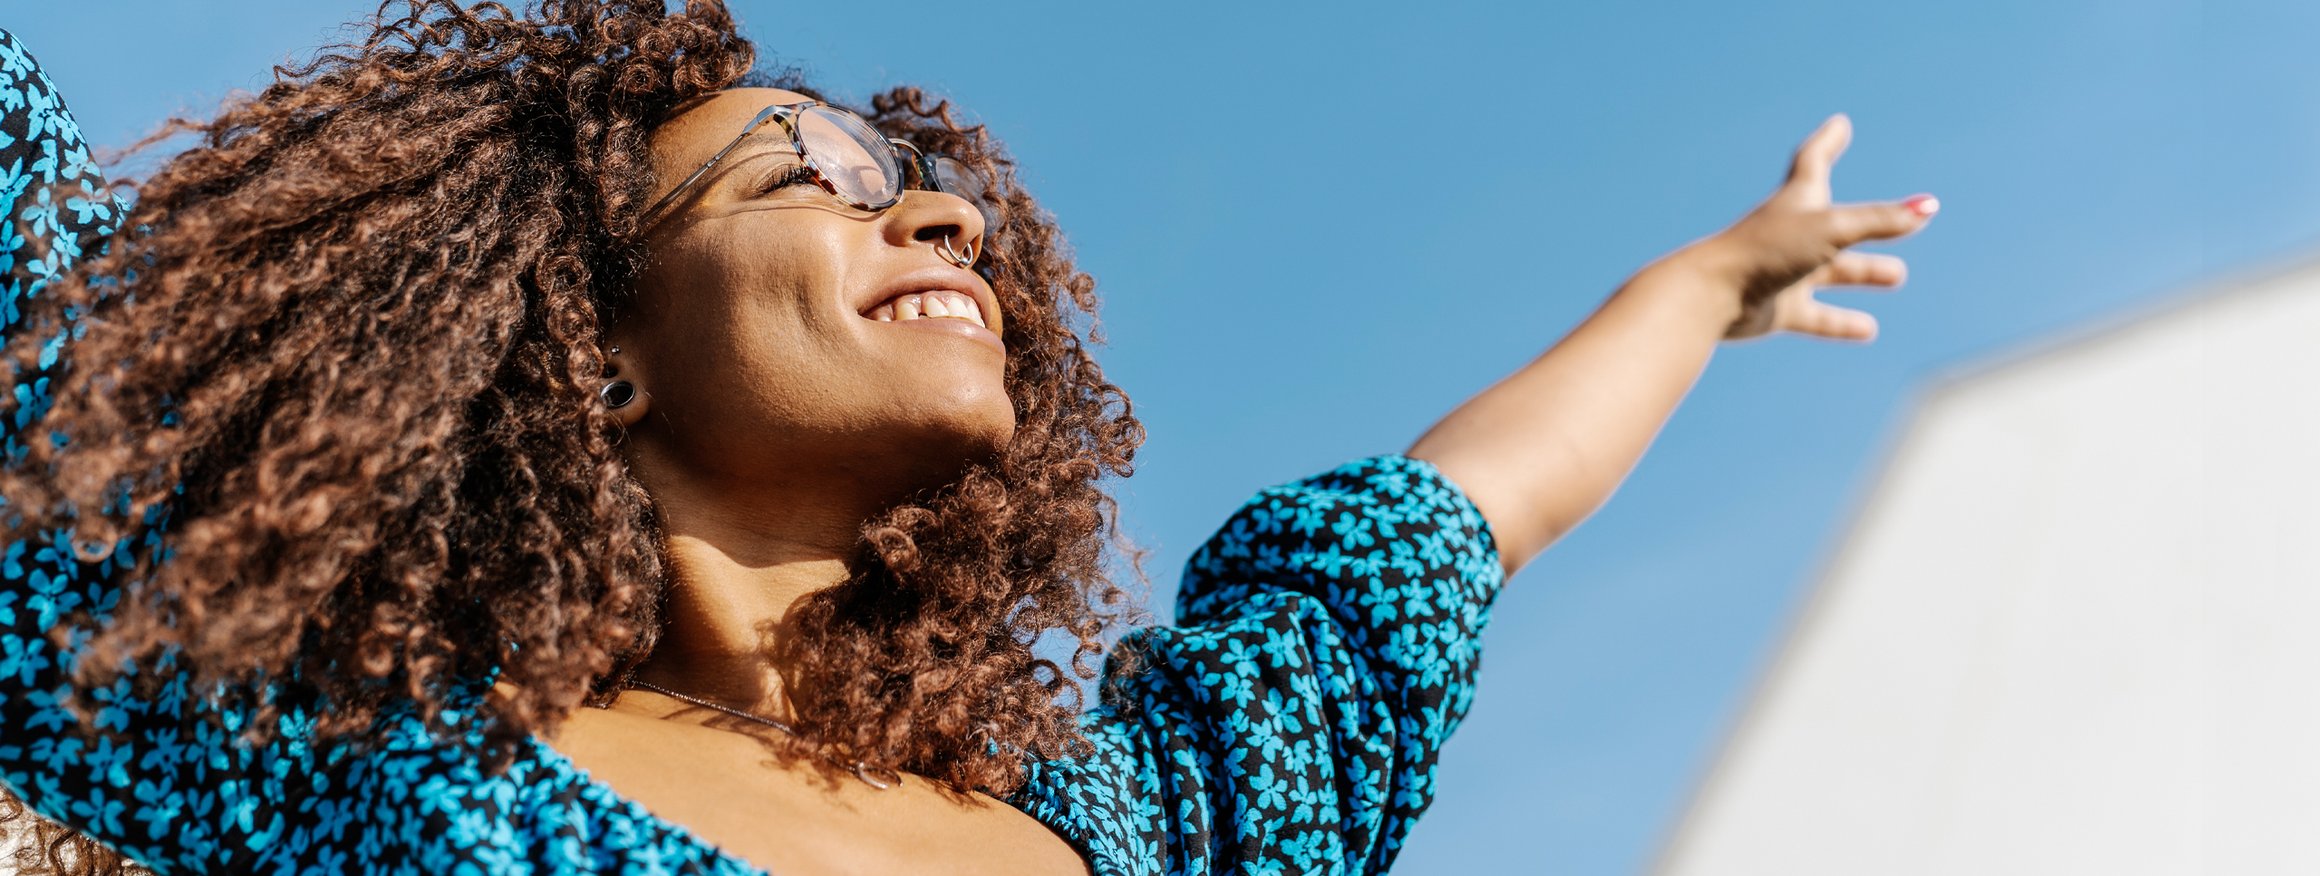 Eine junge Frau mit Locken reckt glücklich die Arme in den Himmel, weil sie glaubt, immer positiv zu denken fördert die Gesundheit